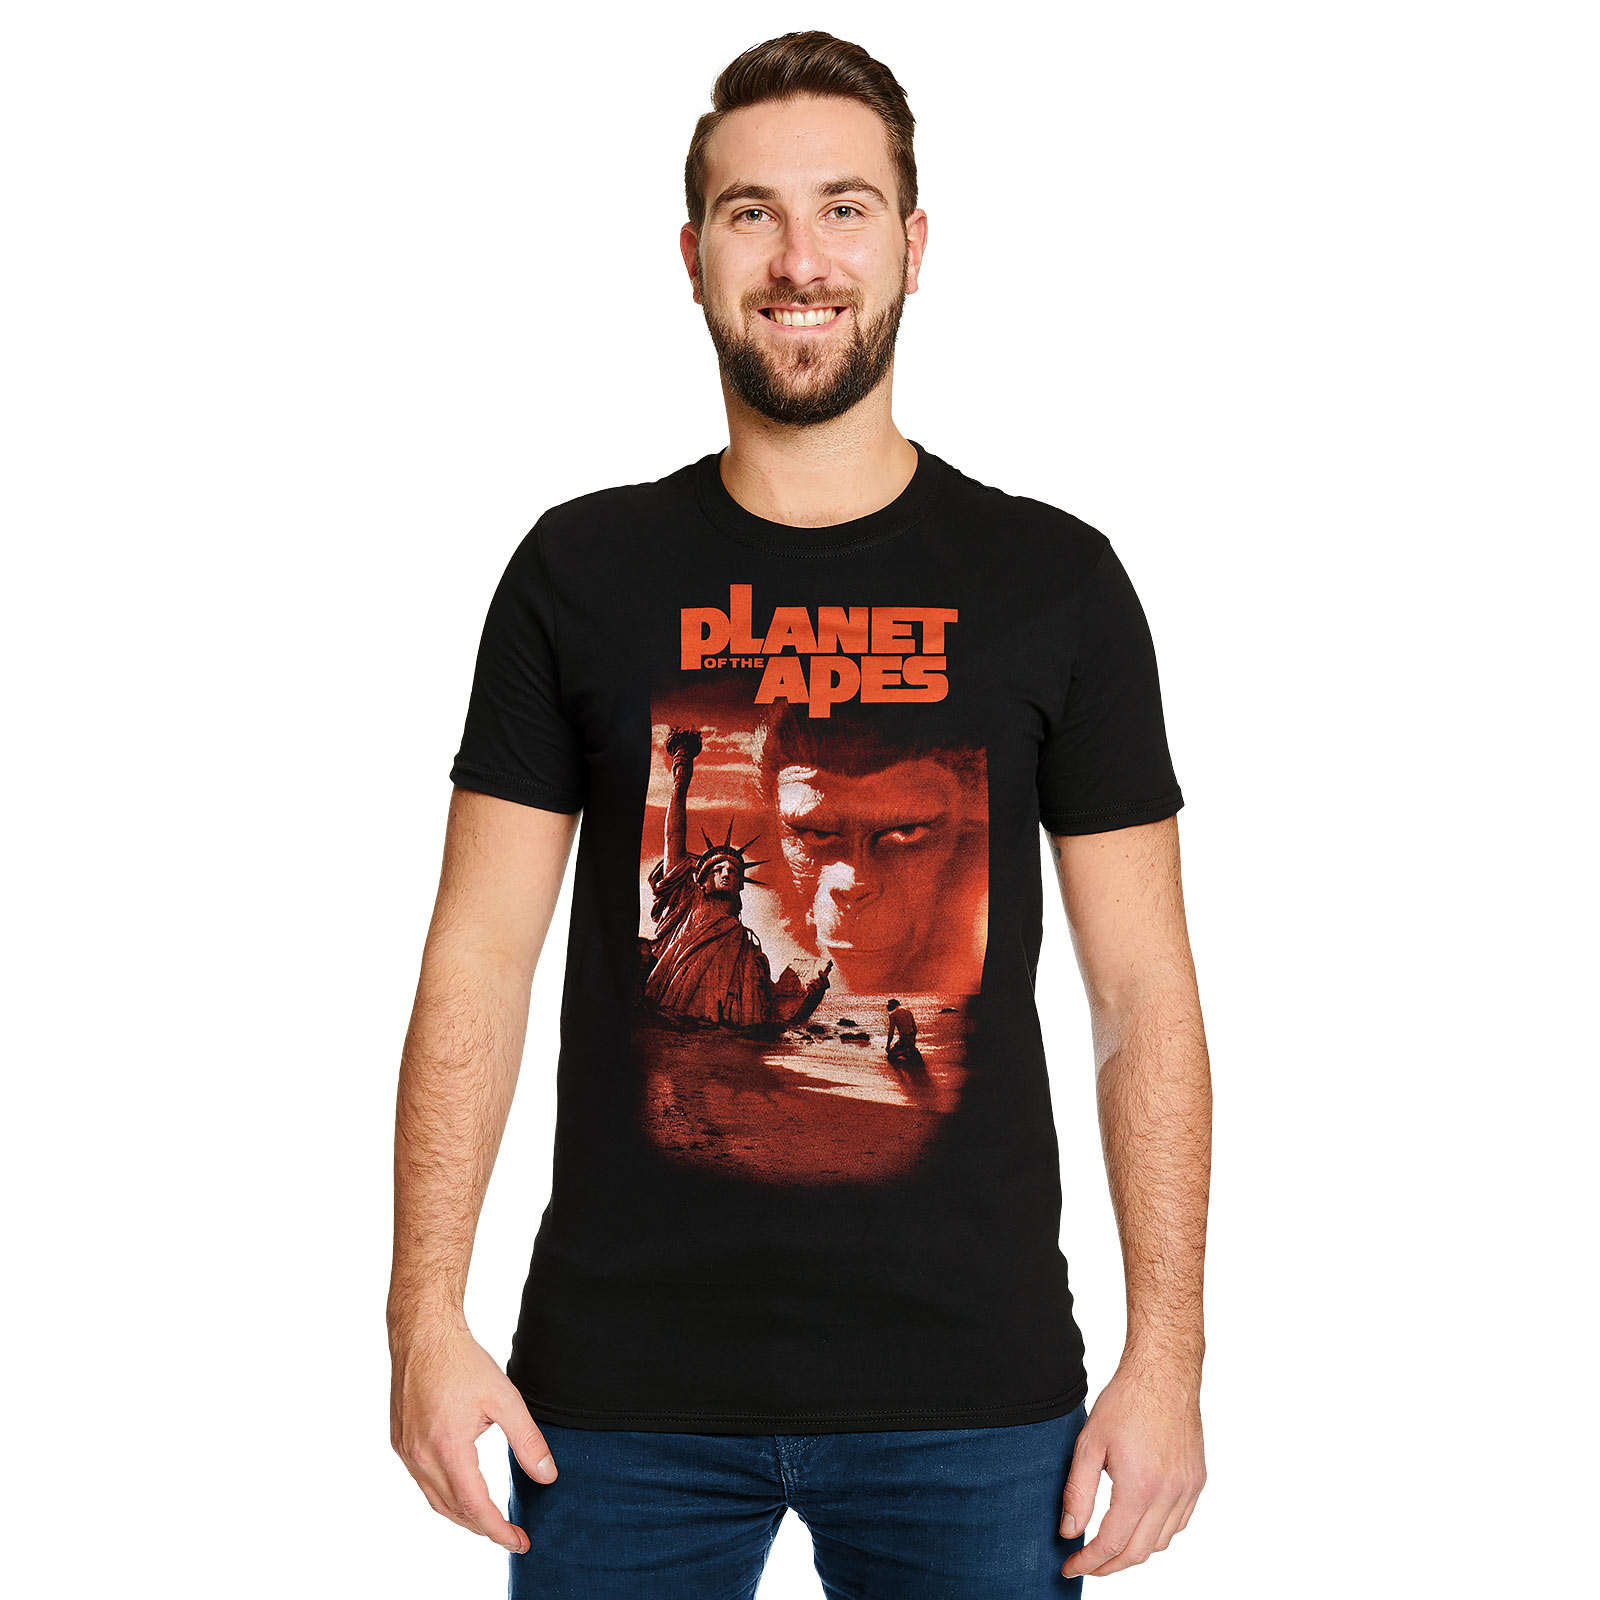 La Planète des Singes - T-shirt noir affiche de film classique 1968